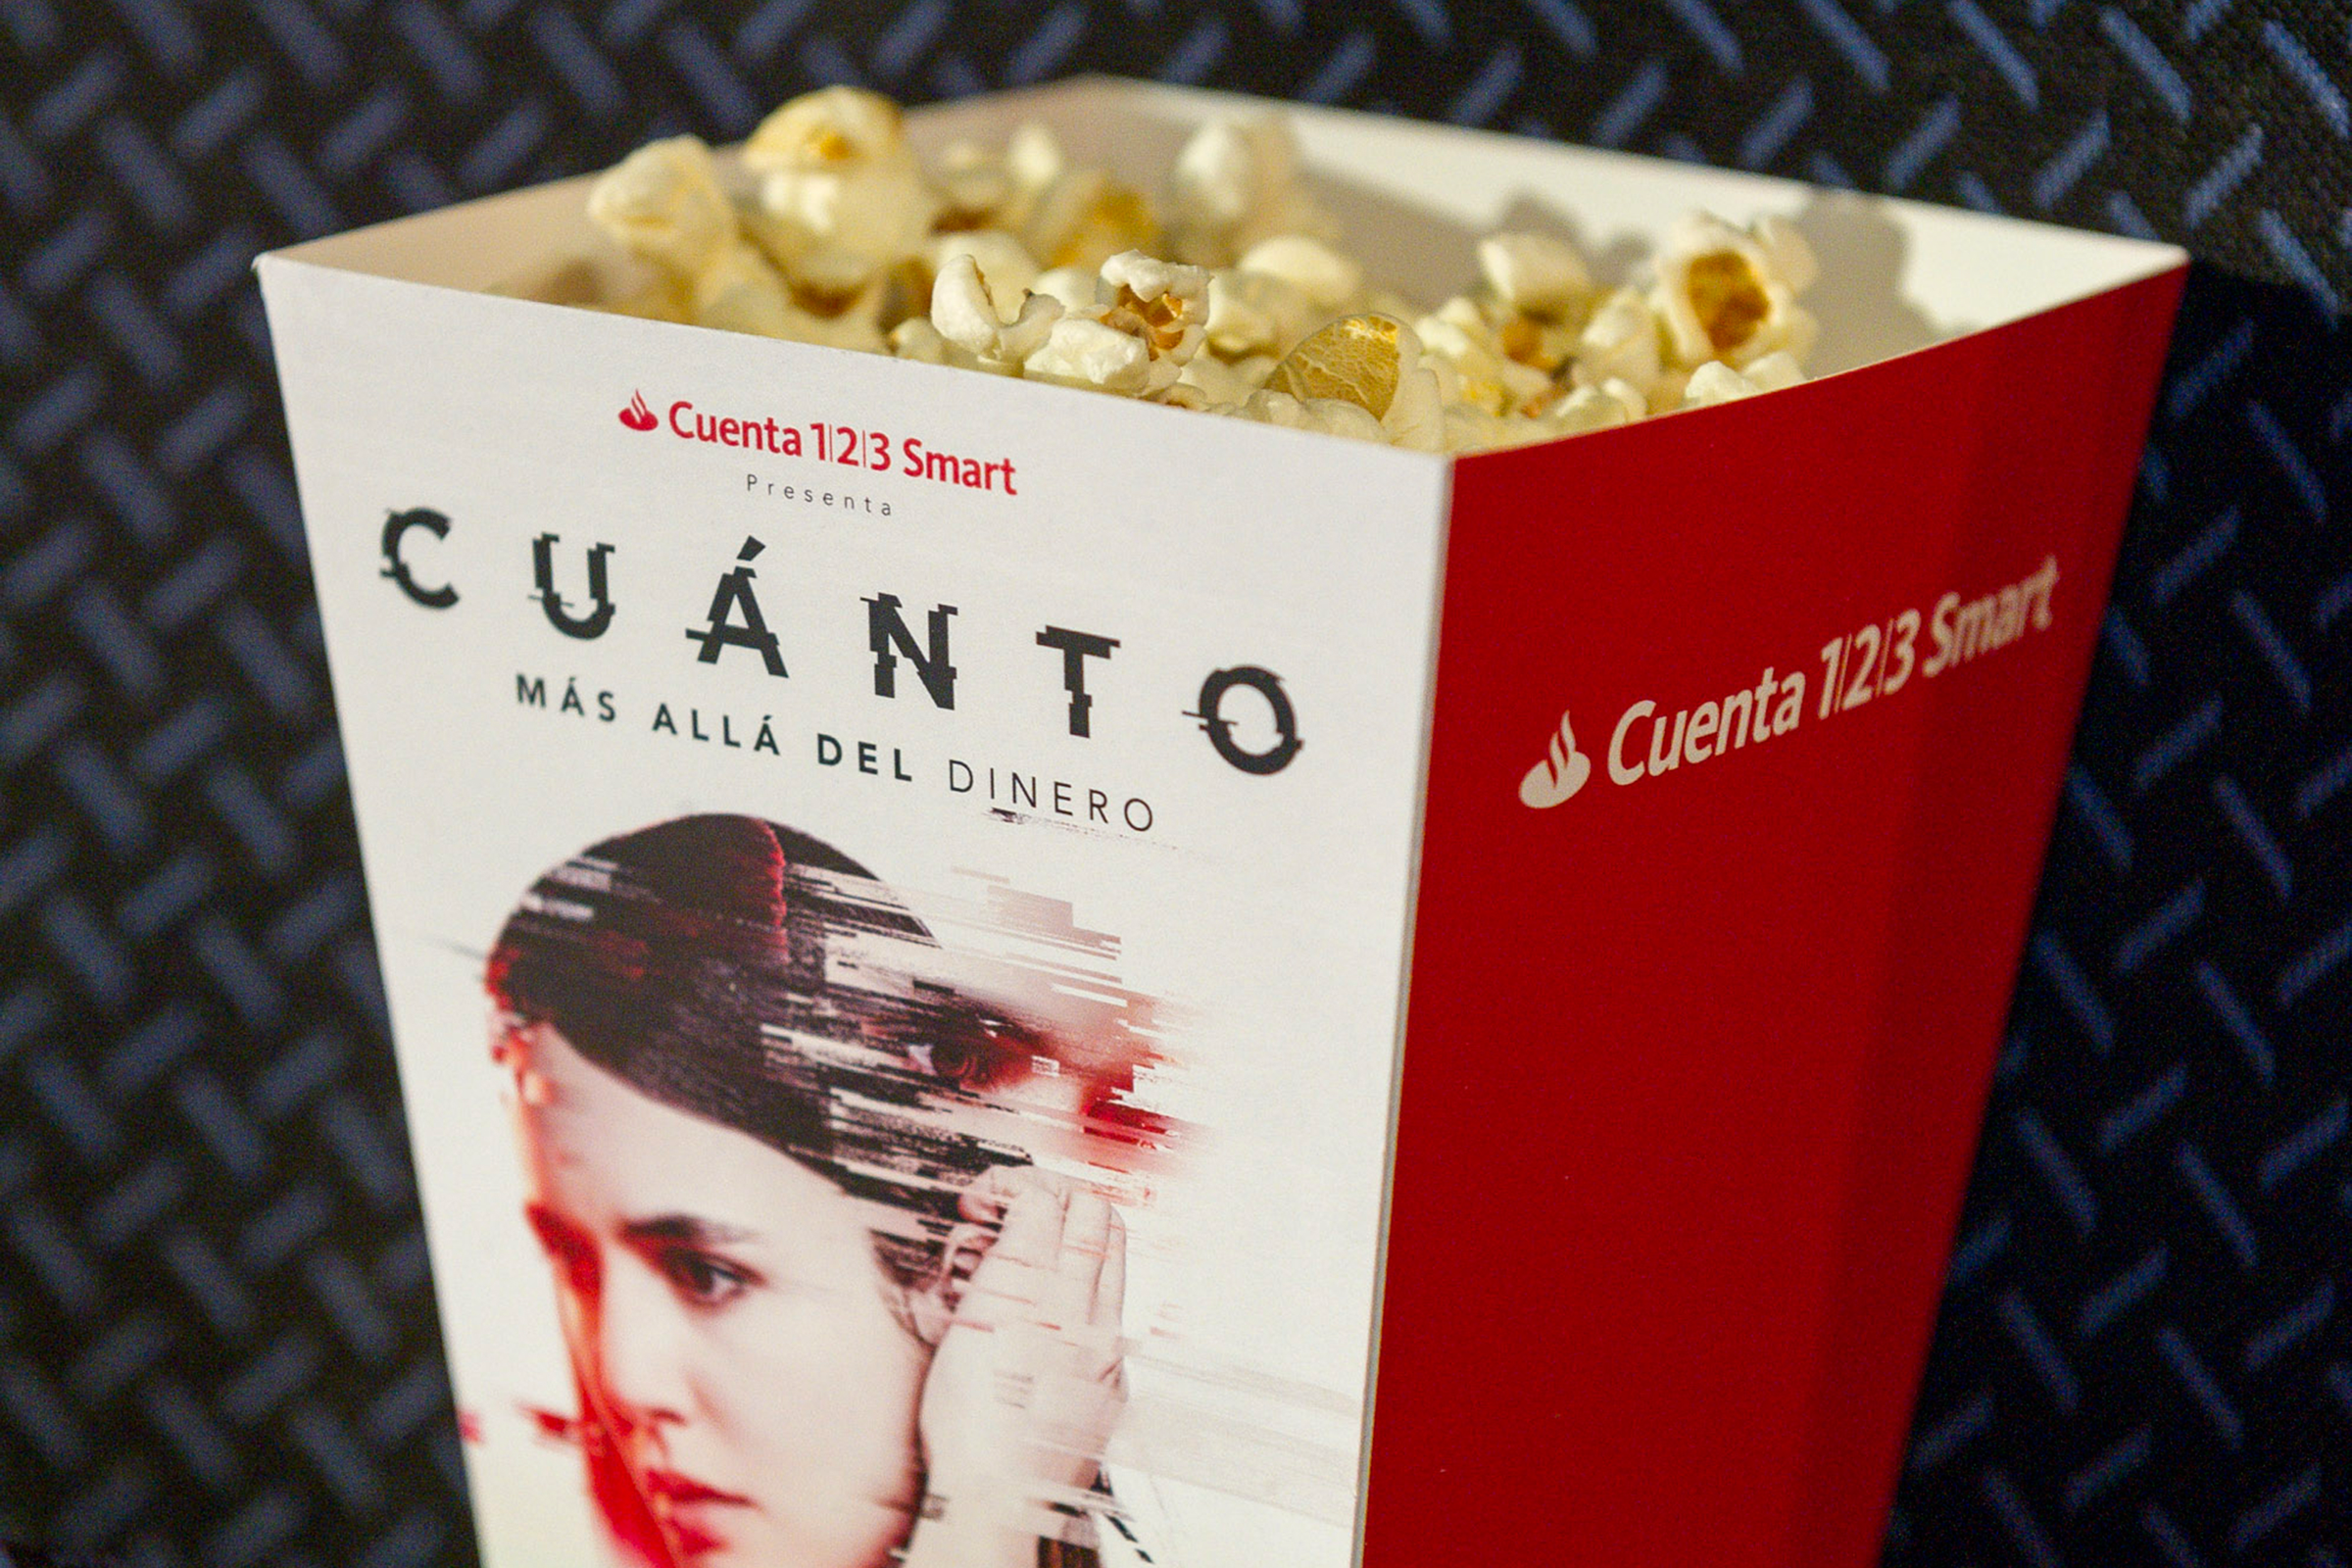 Popcorn Container: Cuanto Mas Alla Del Dinero